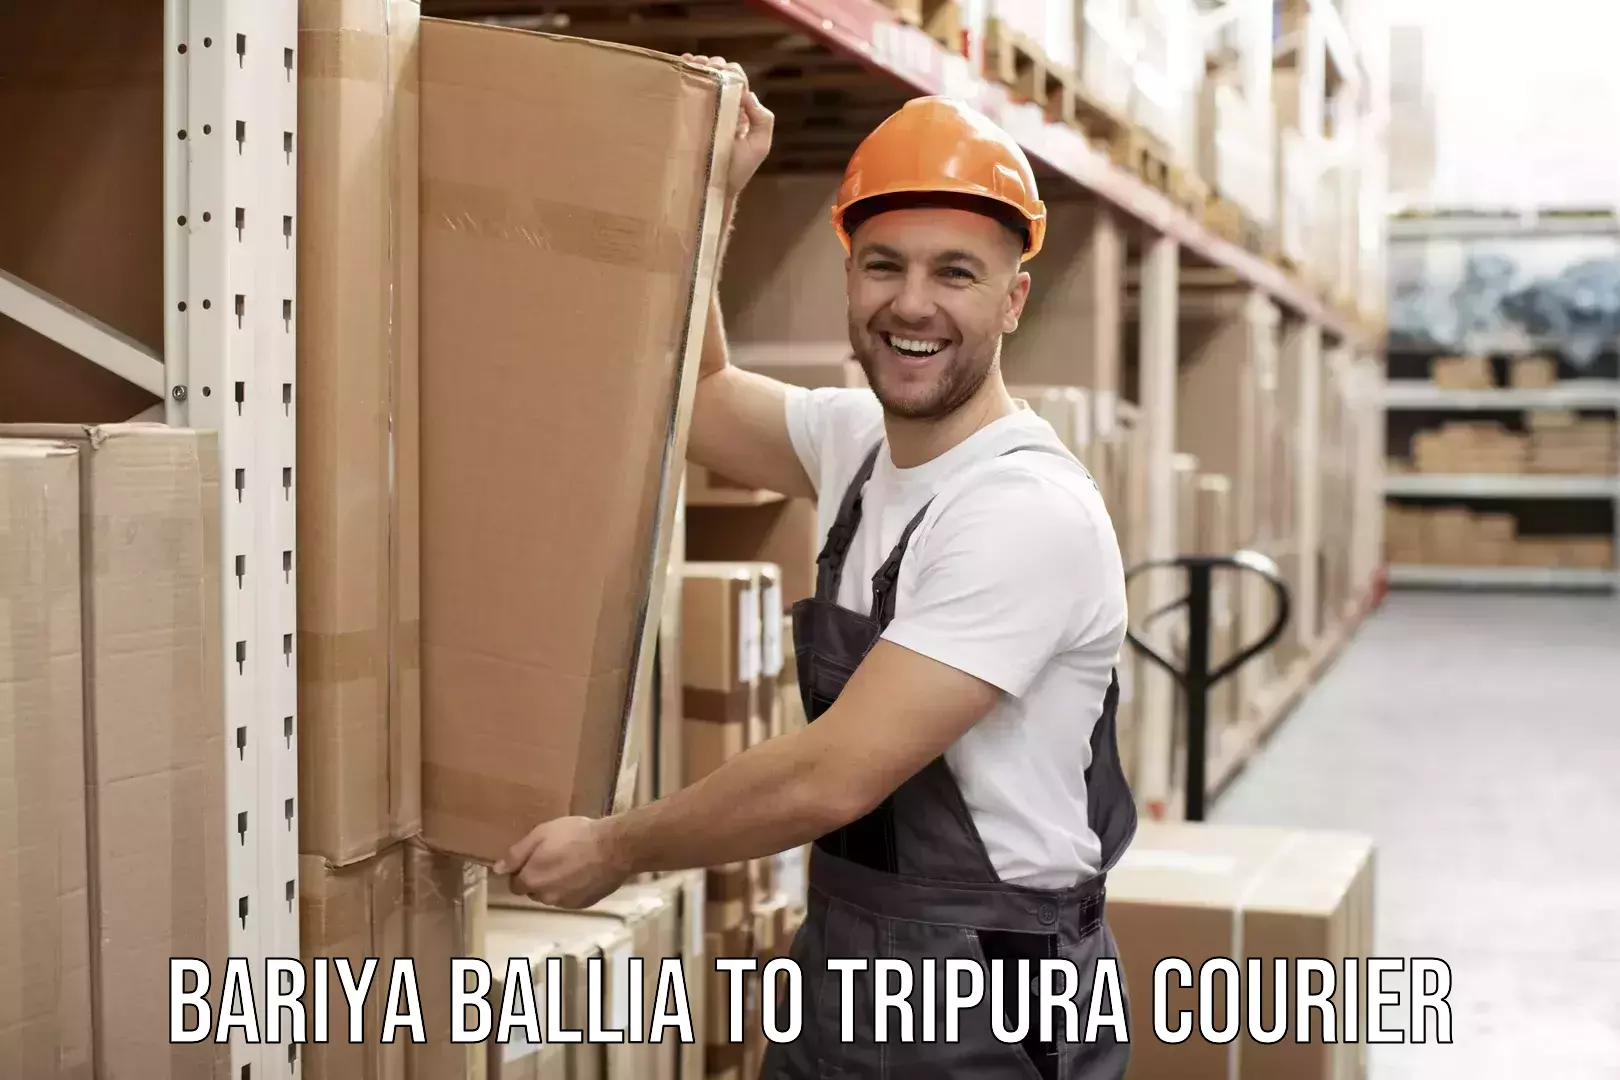 Furniture transport service Bariya Ballia to Agartala